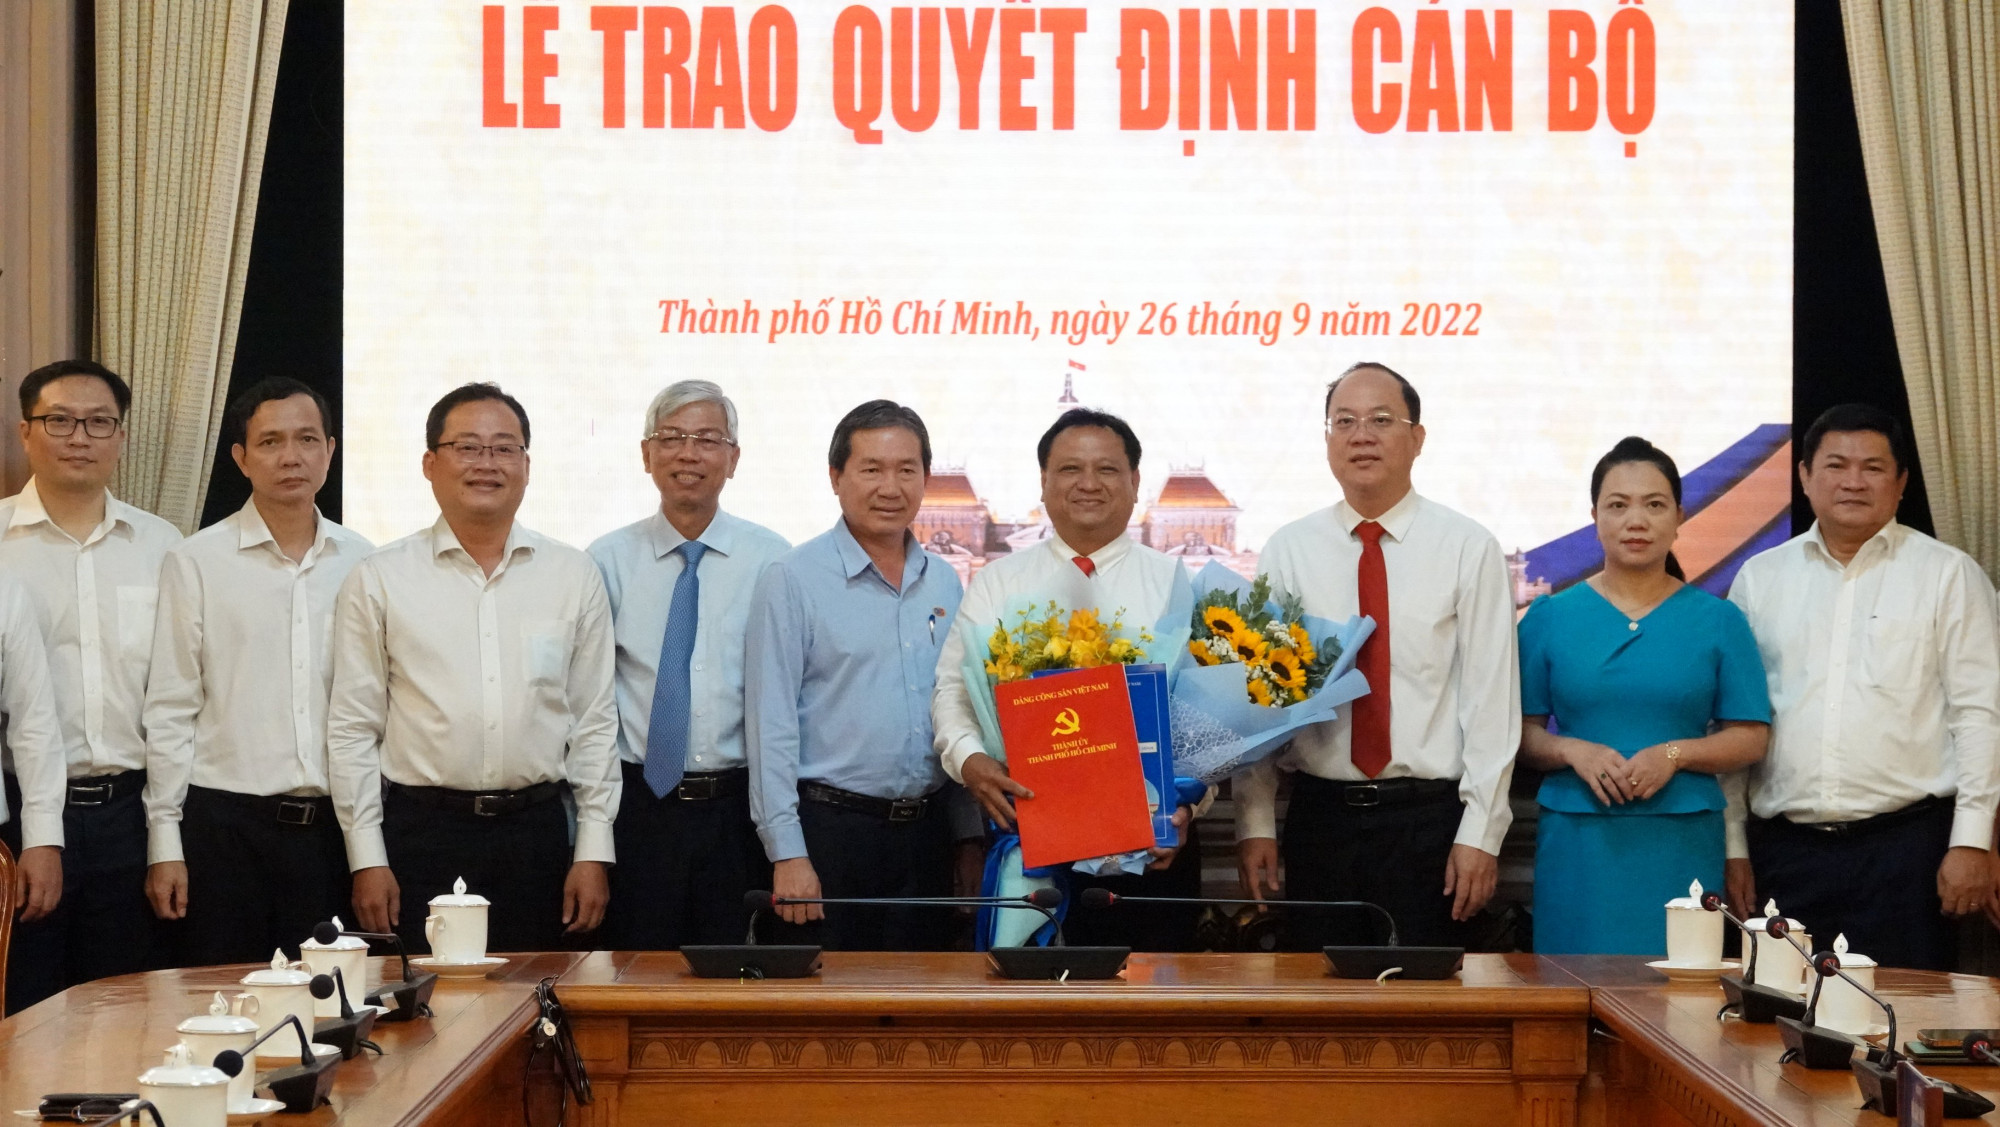 Trần Phi Long nhận hoa chúc mừng của lãnh đạo các đơn vị